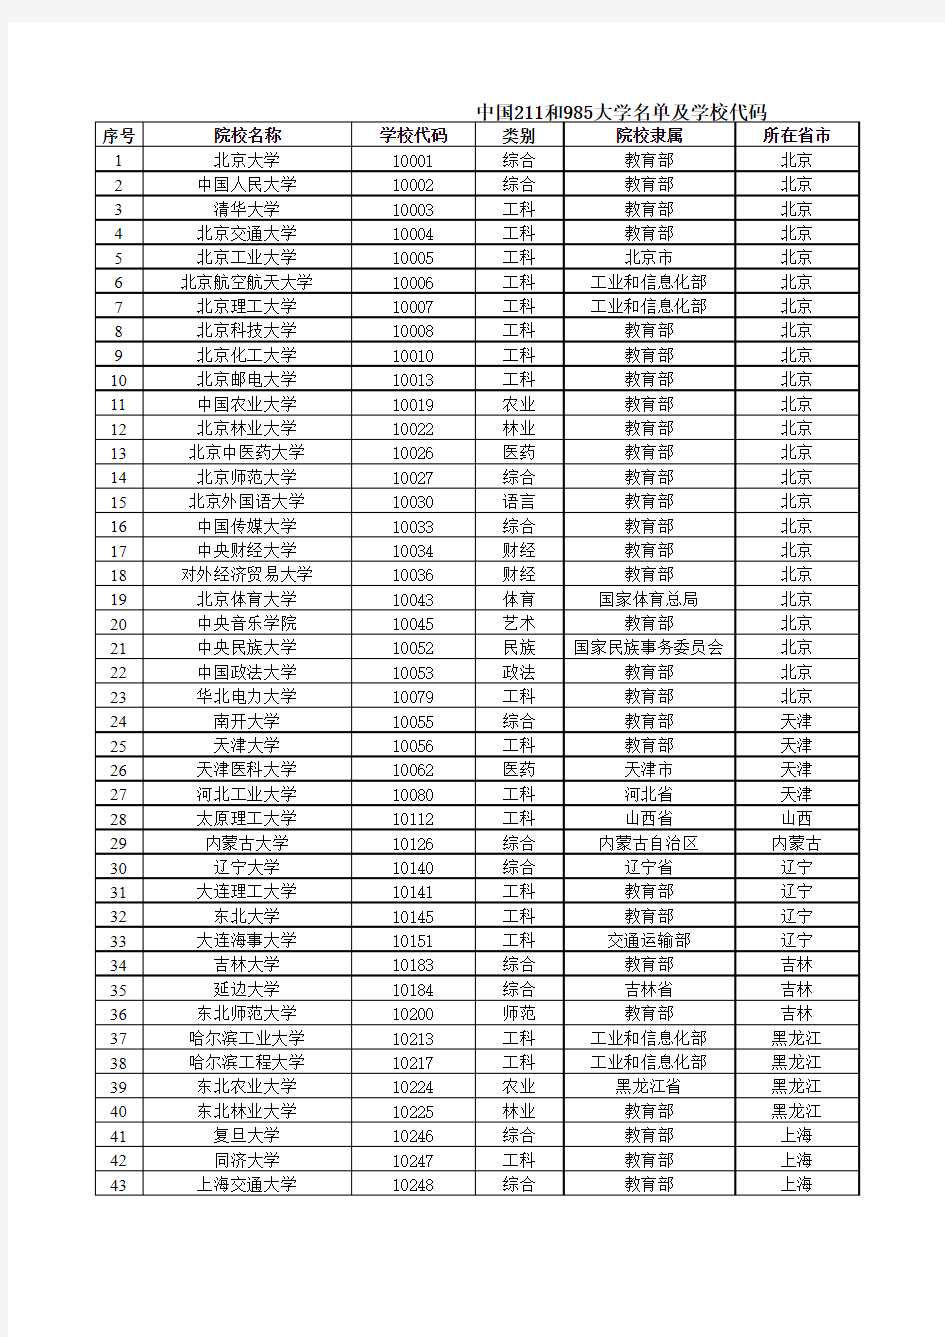 中国211和985高校名单及学校代码